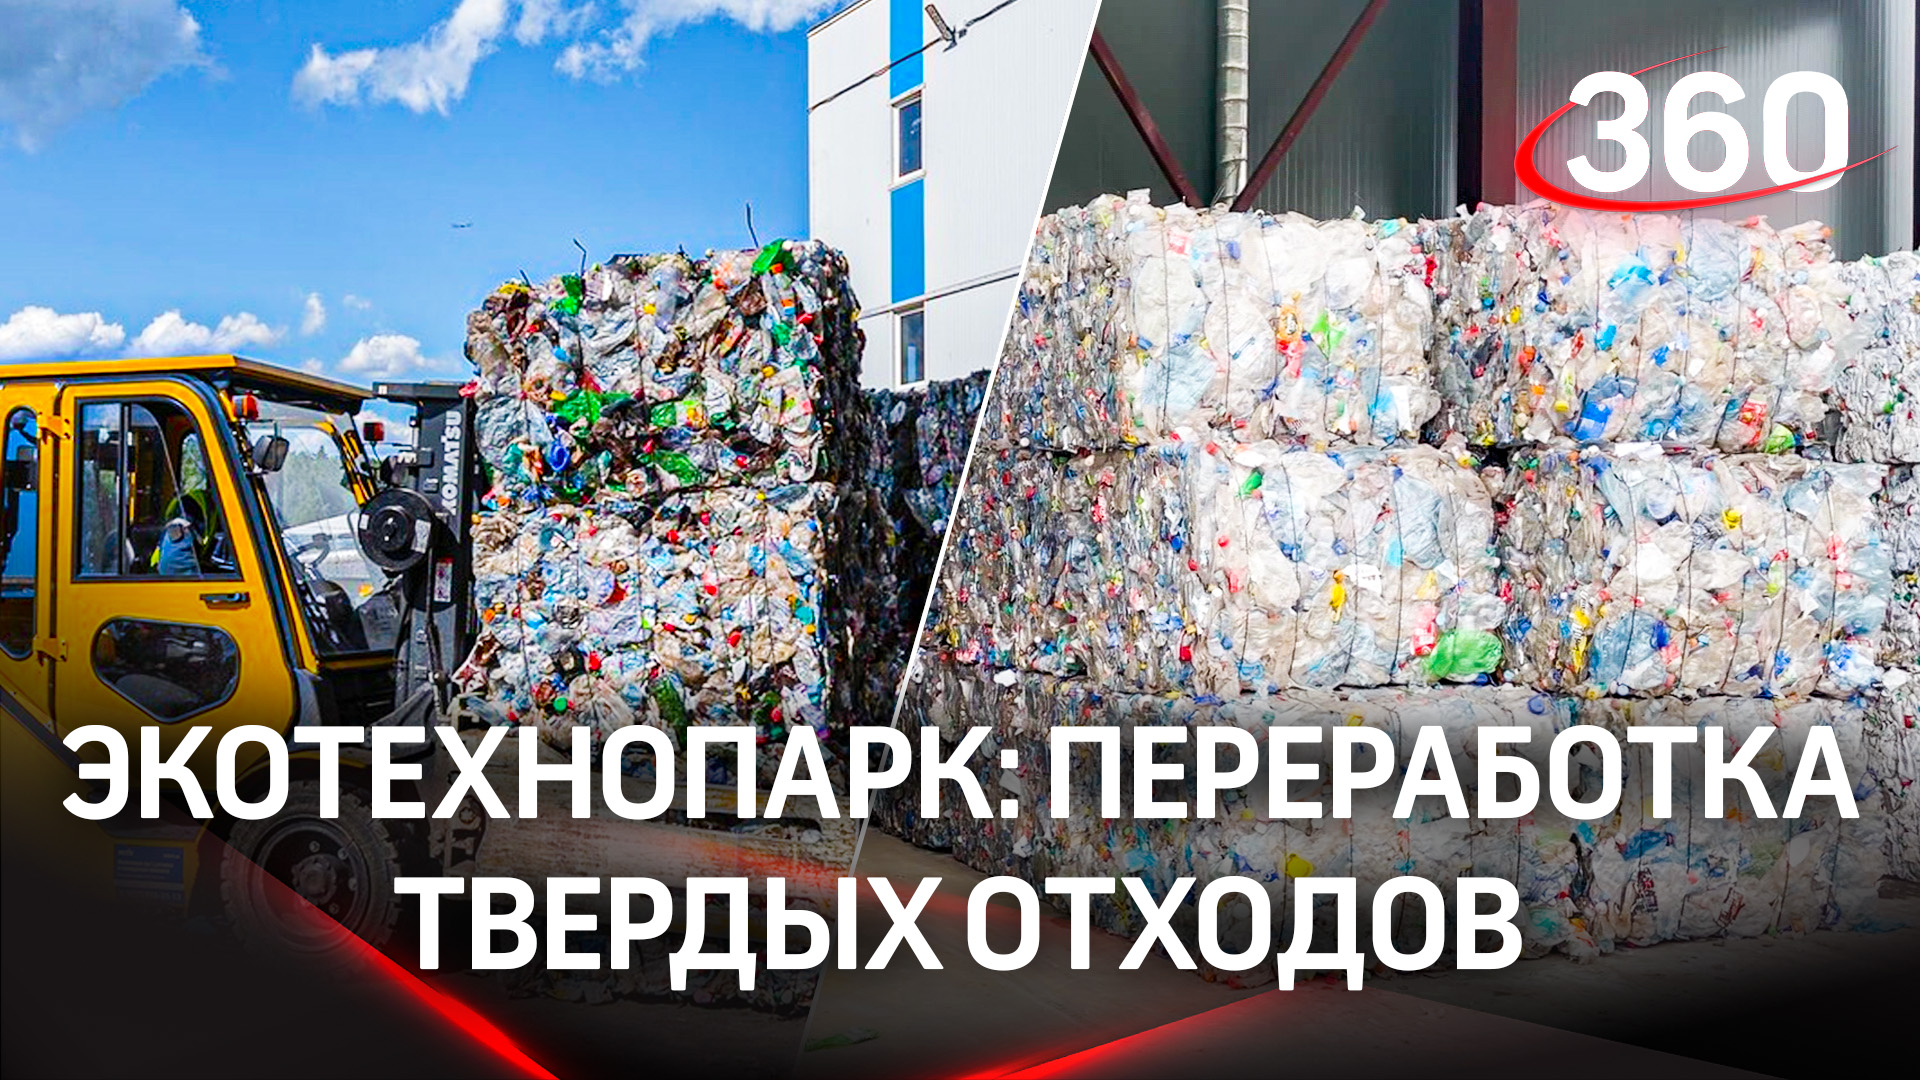 В Нижегородской области появится экотехнопарк с комплексом переработки твердых отходов